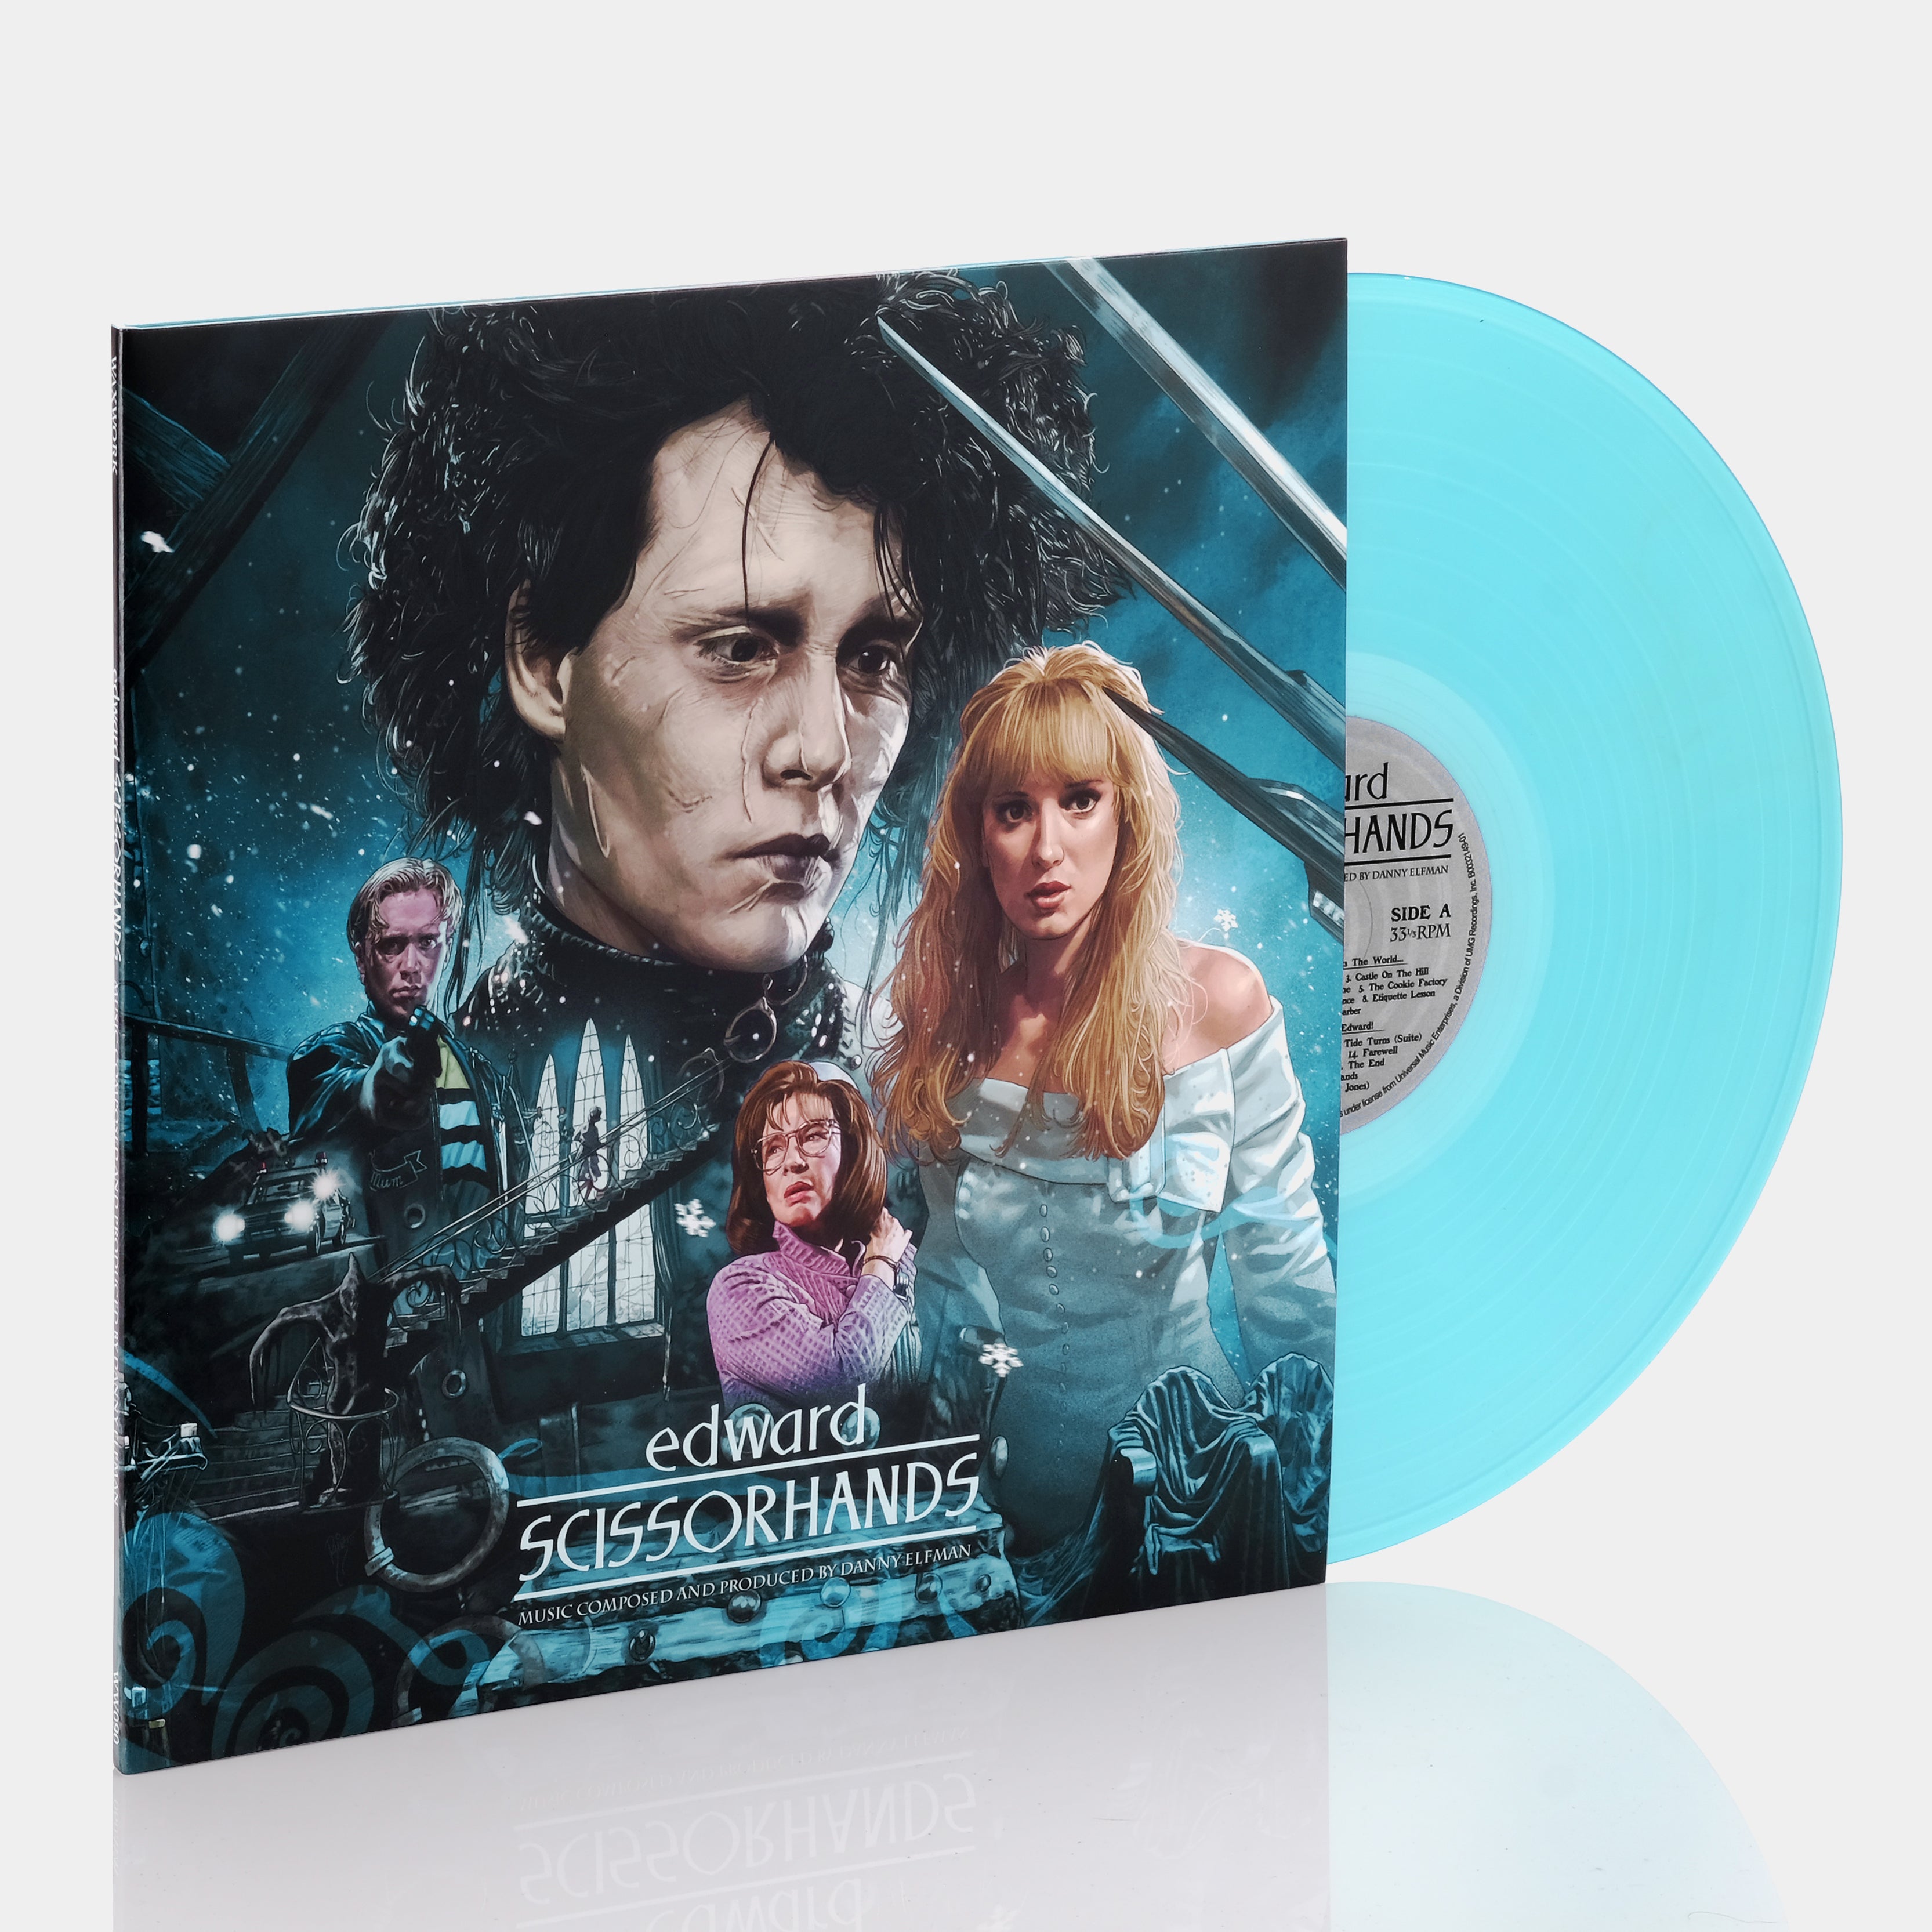 Edward Scissorhands - Original Motion Picture Soundtrack LP Light Blue Vinyl Record